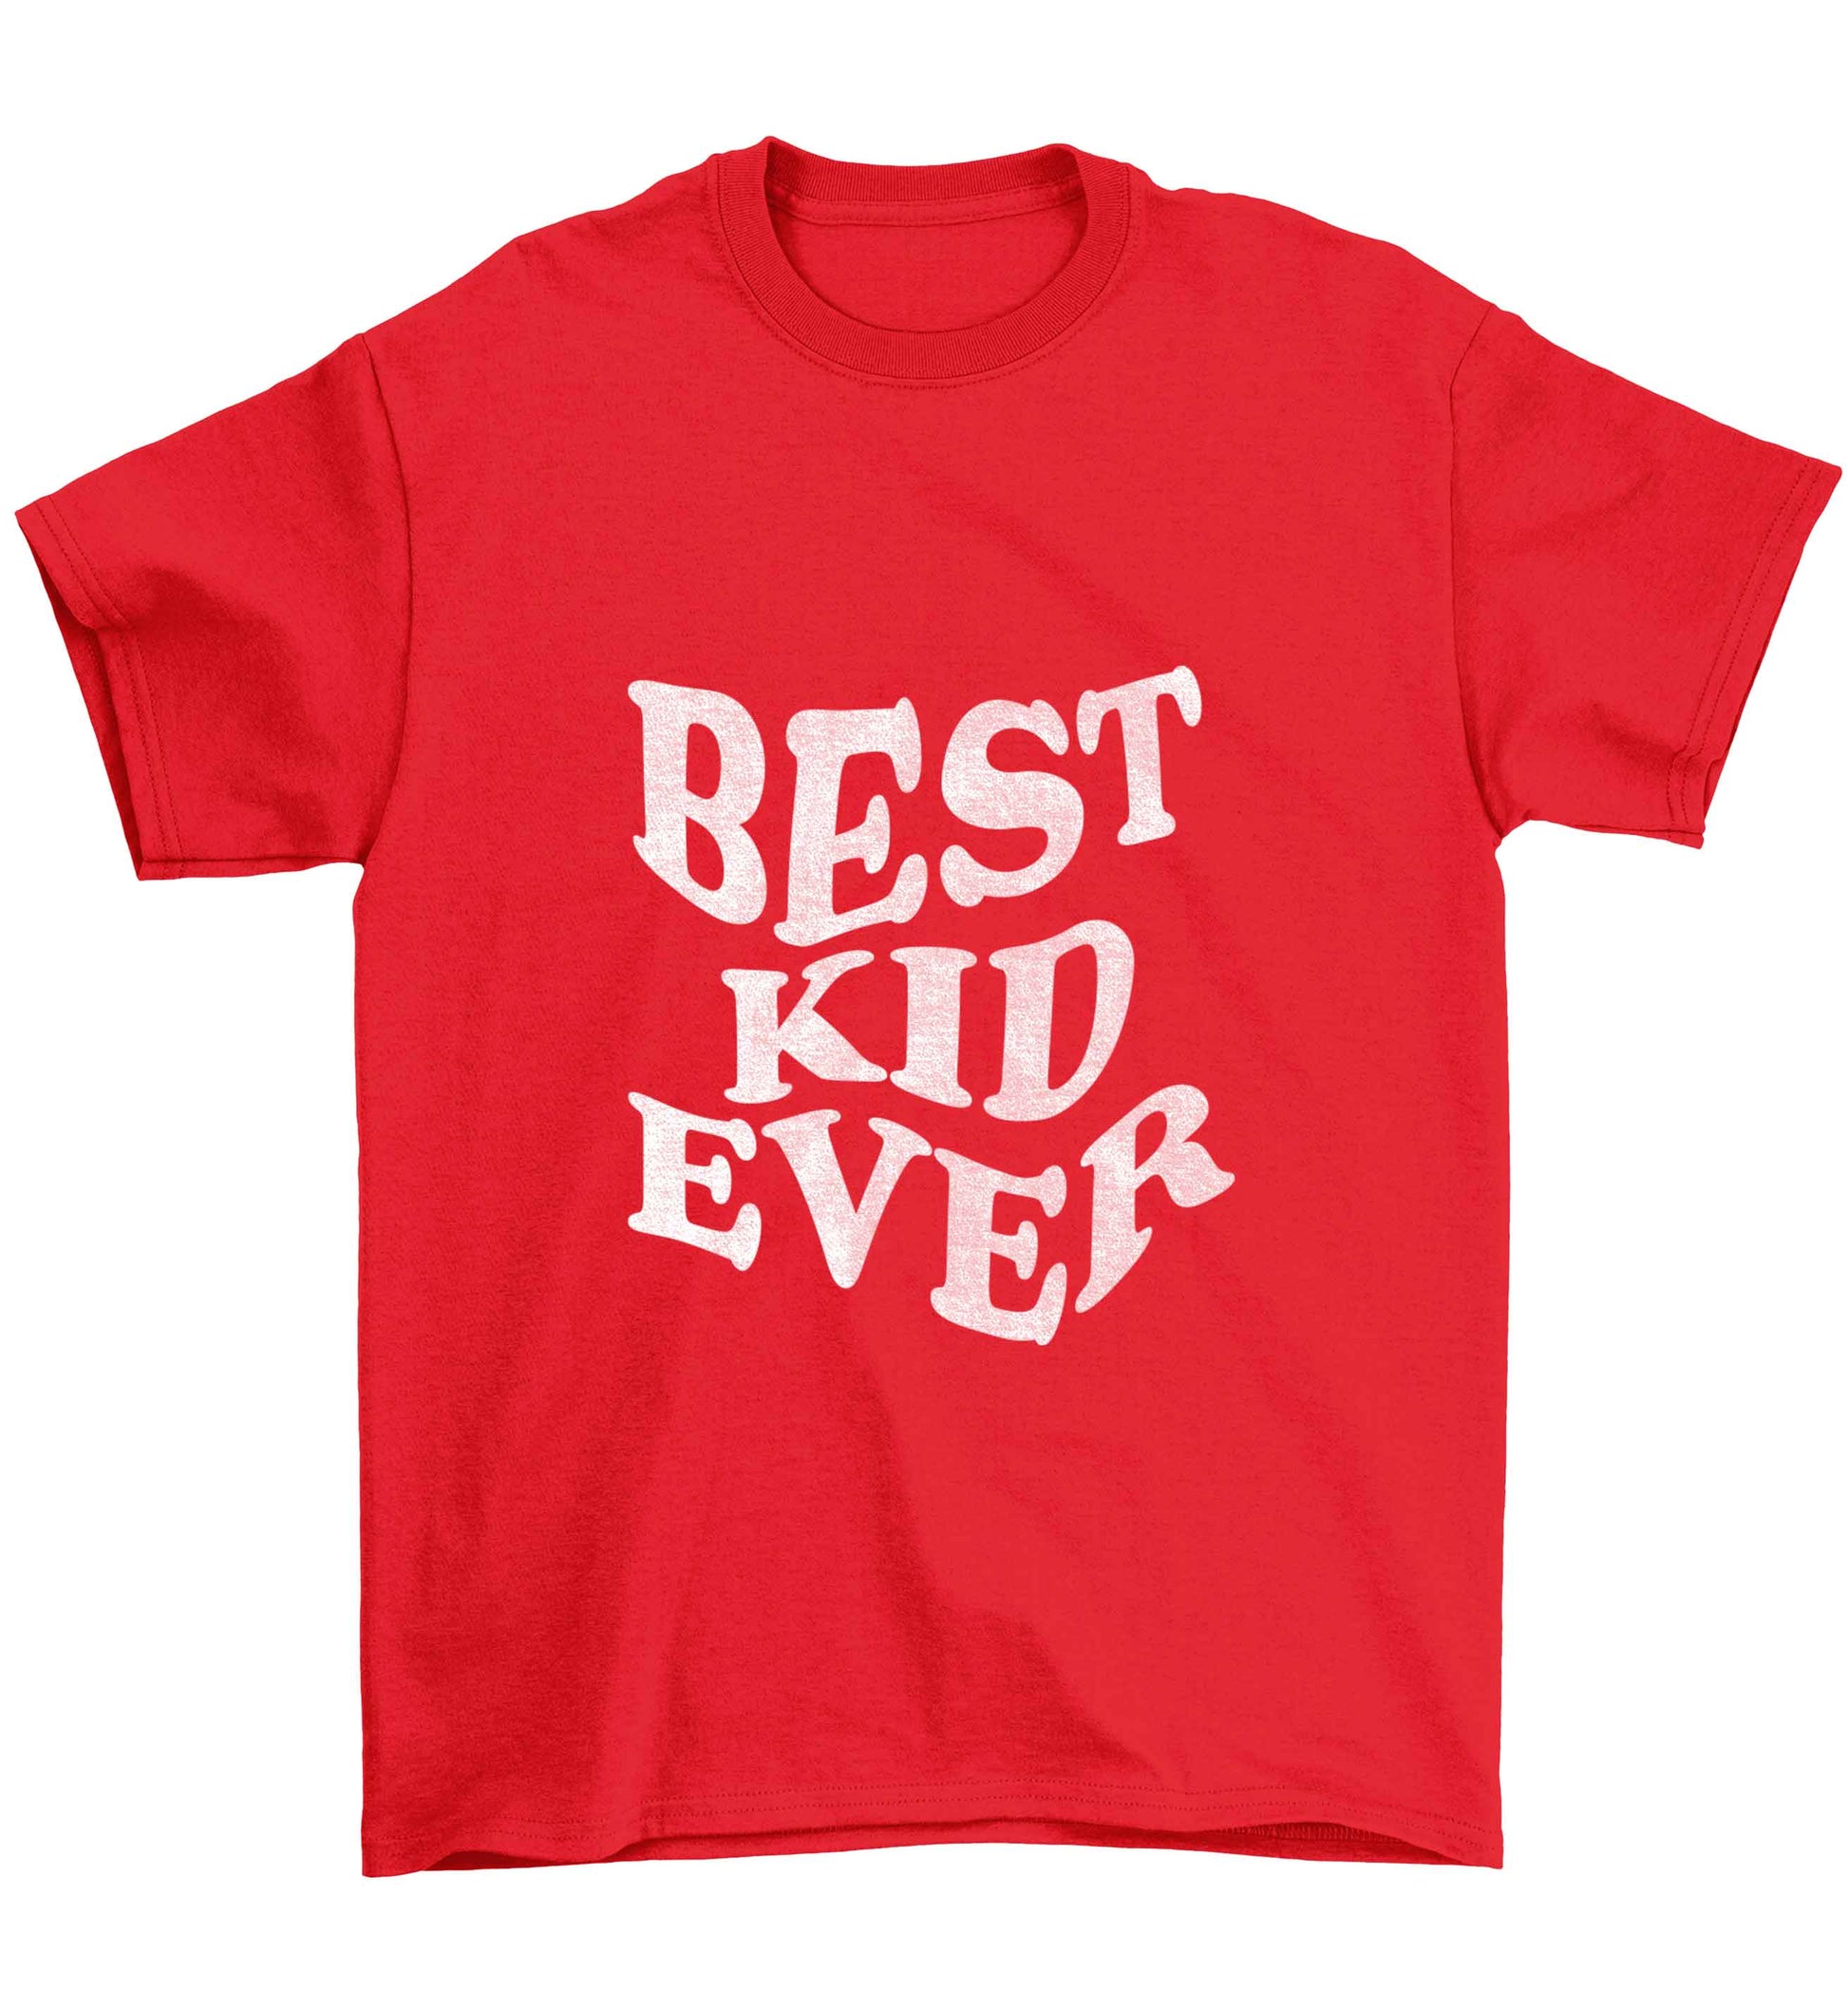 Best kid ever Children's red Tshirt 12-13 Years